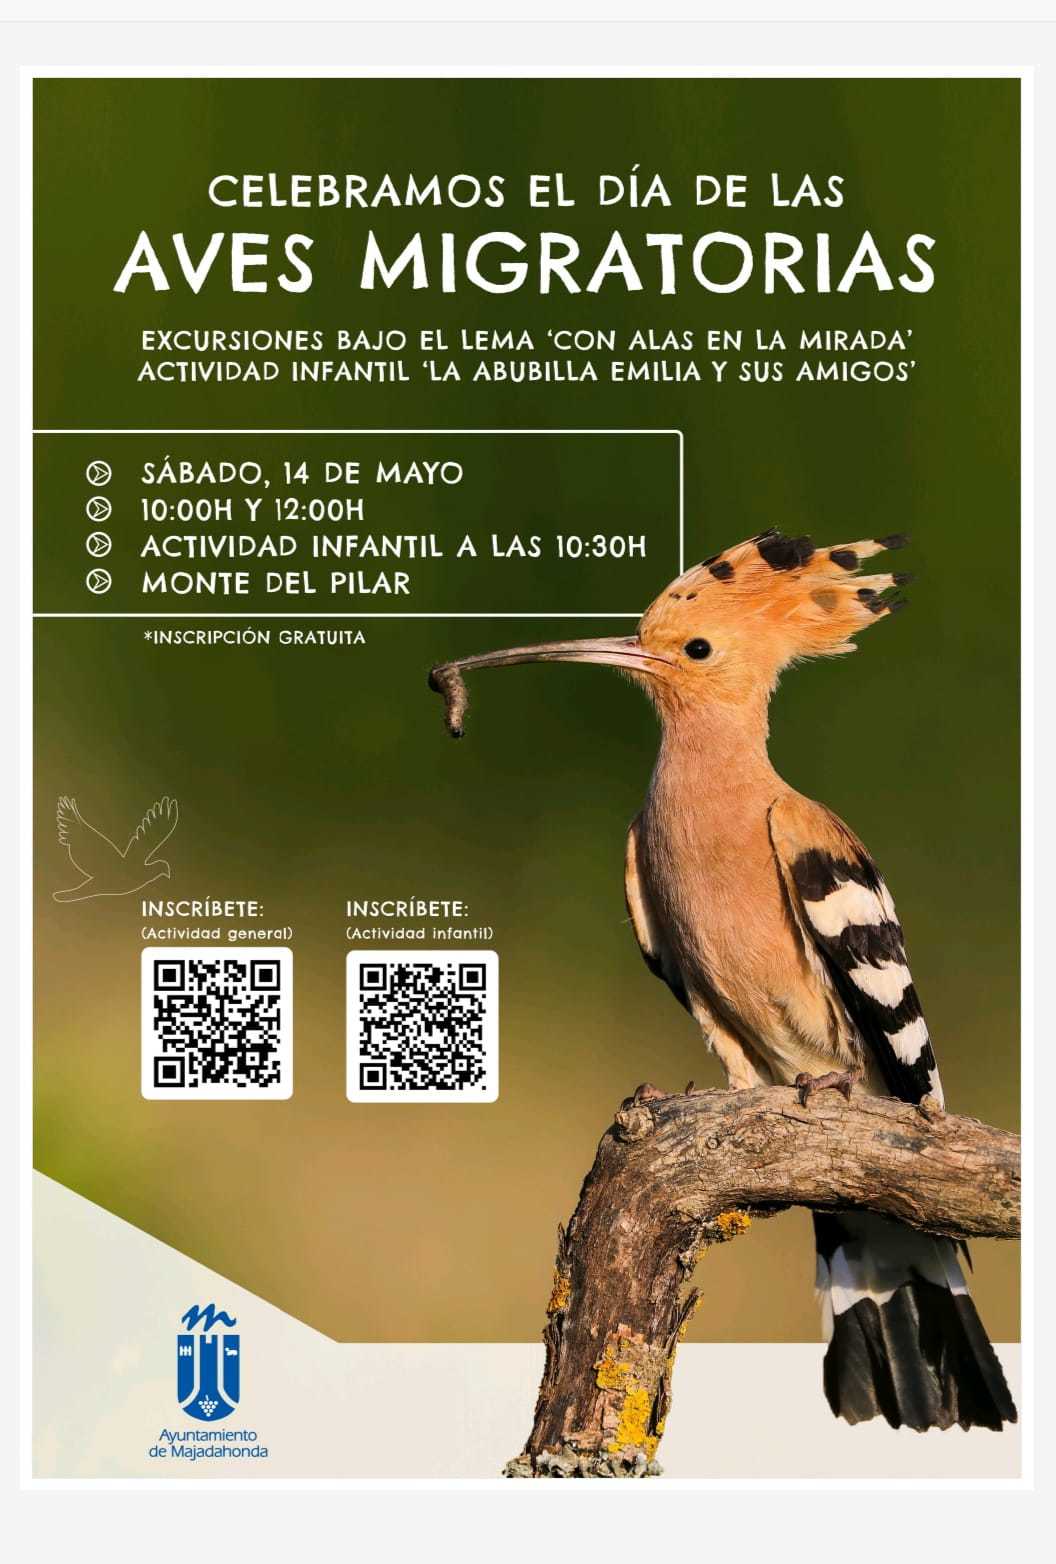 Psiquiatría Arenoso Microprocesador Majadahonda celebra el Día de las Aves Migratorias con rutas guiadas por el  Monte del Pilar | Madrid